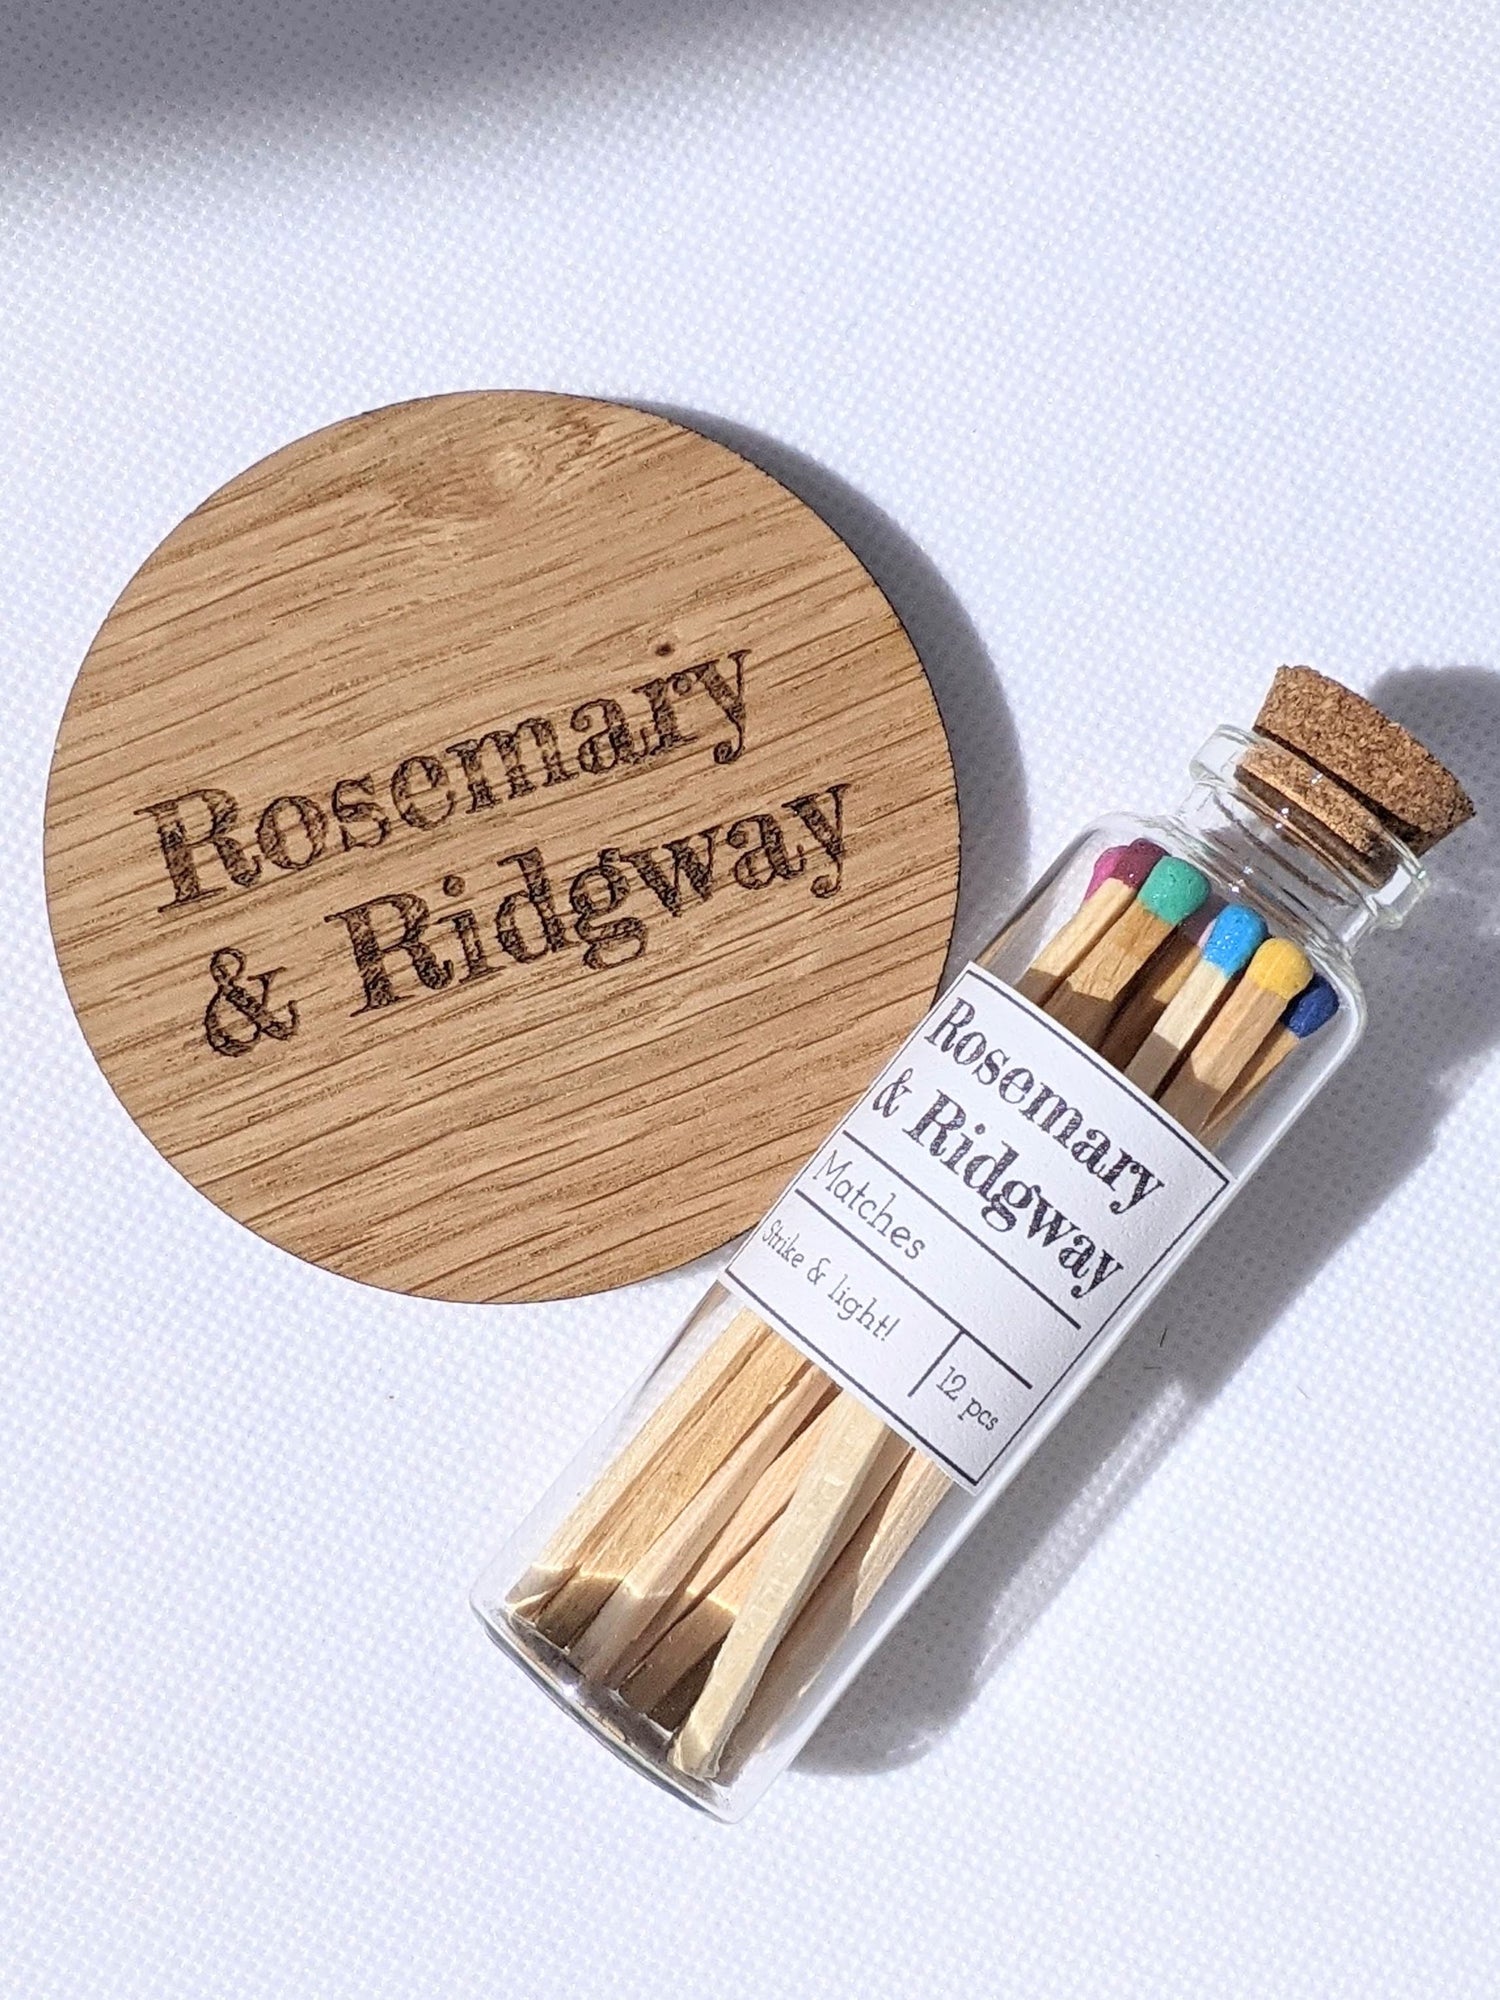 Matches Rosemary & Ridgway